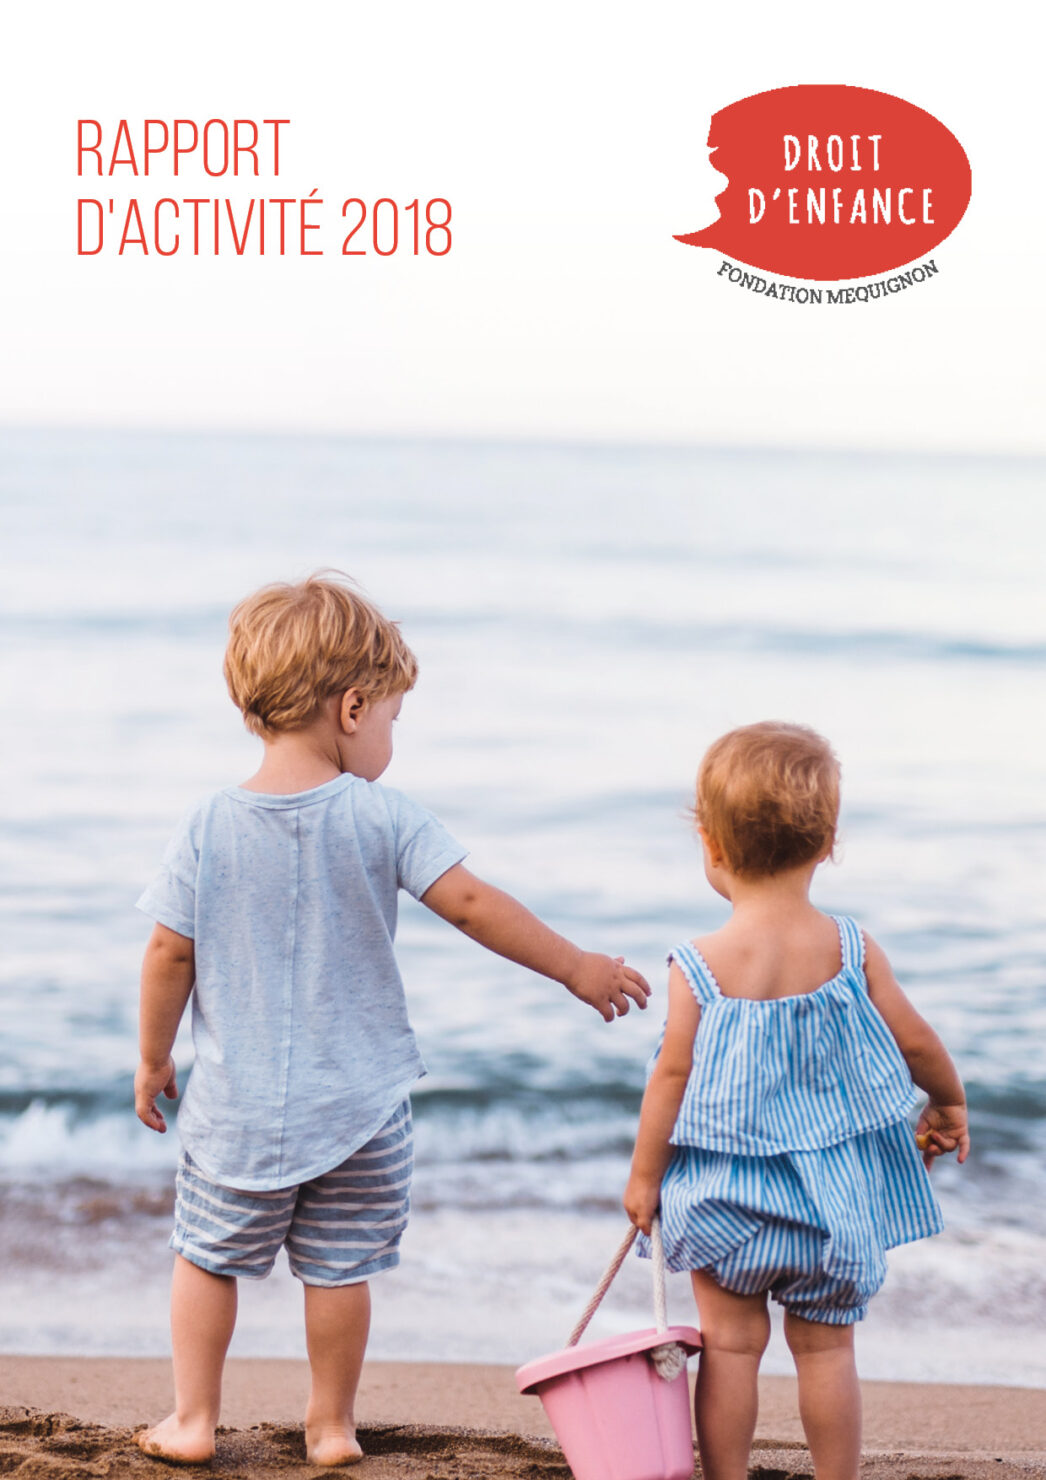 Droit d'Enfance Rapport d'activites 2018